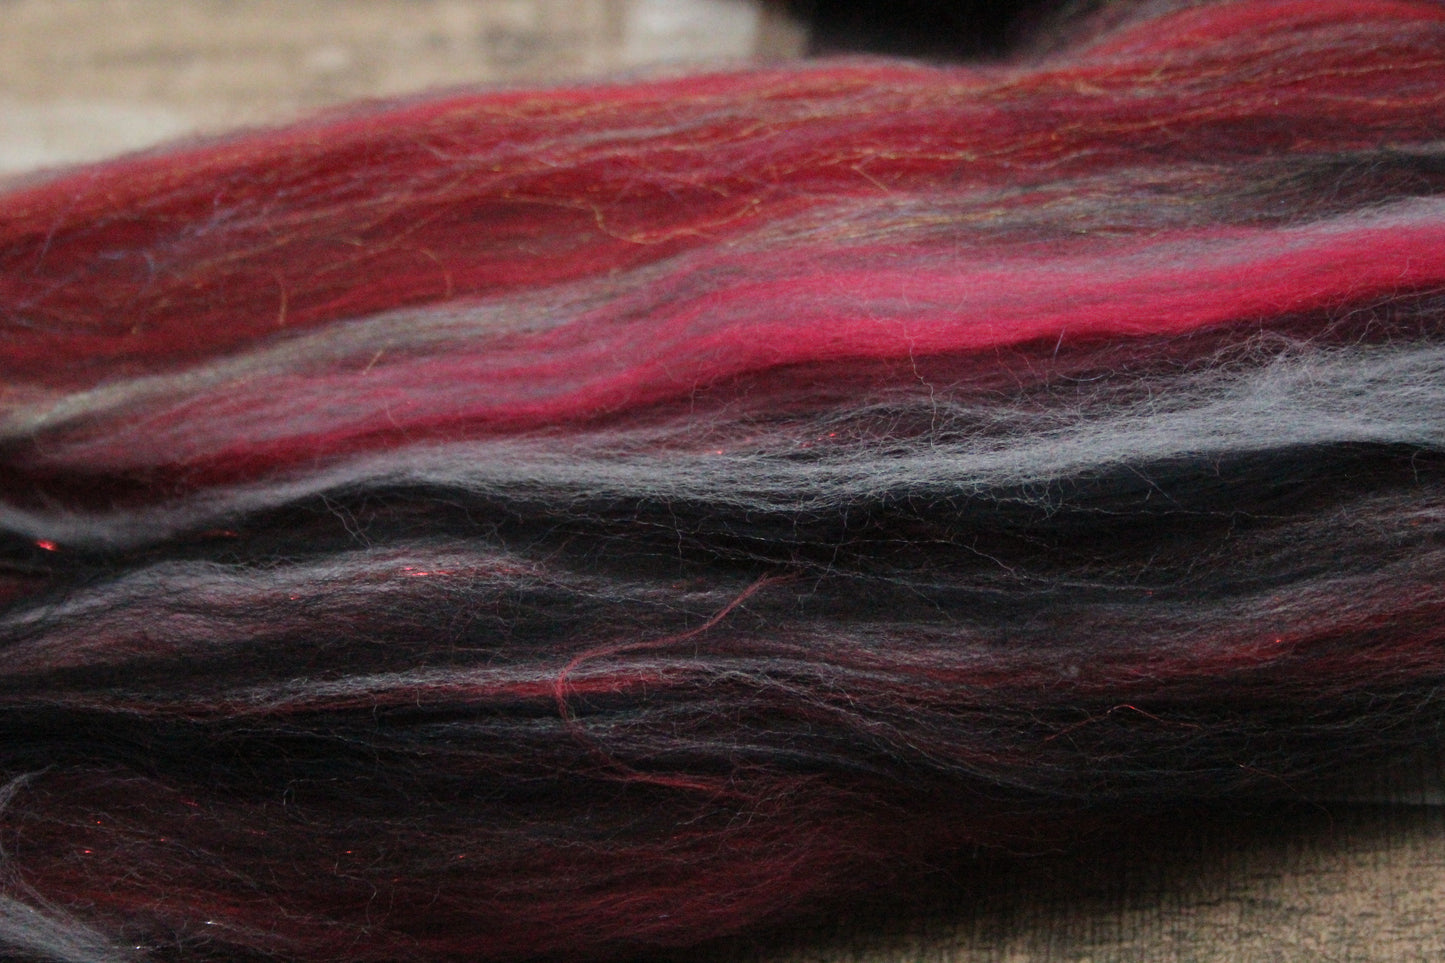 Merino Wool Blend - Red Grey Black - 45 grams / 1.5 oz  - Fibre for felting, weaving or spinning